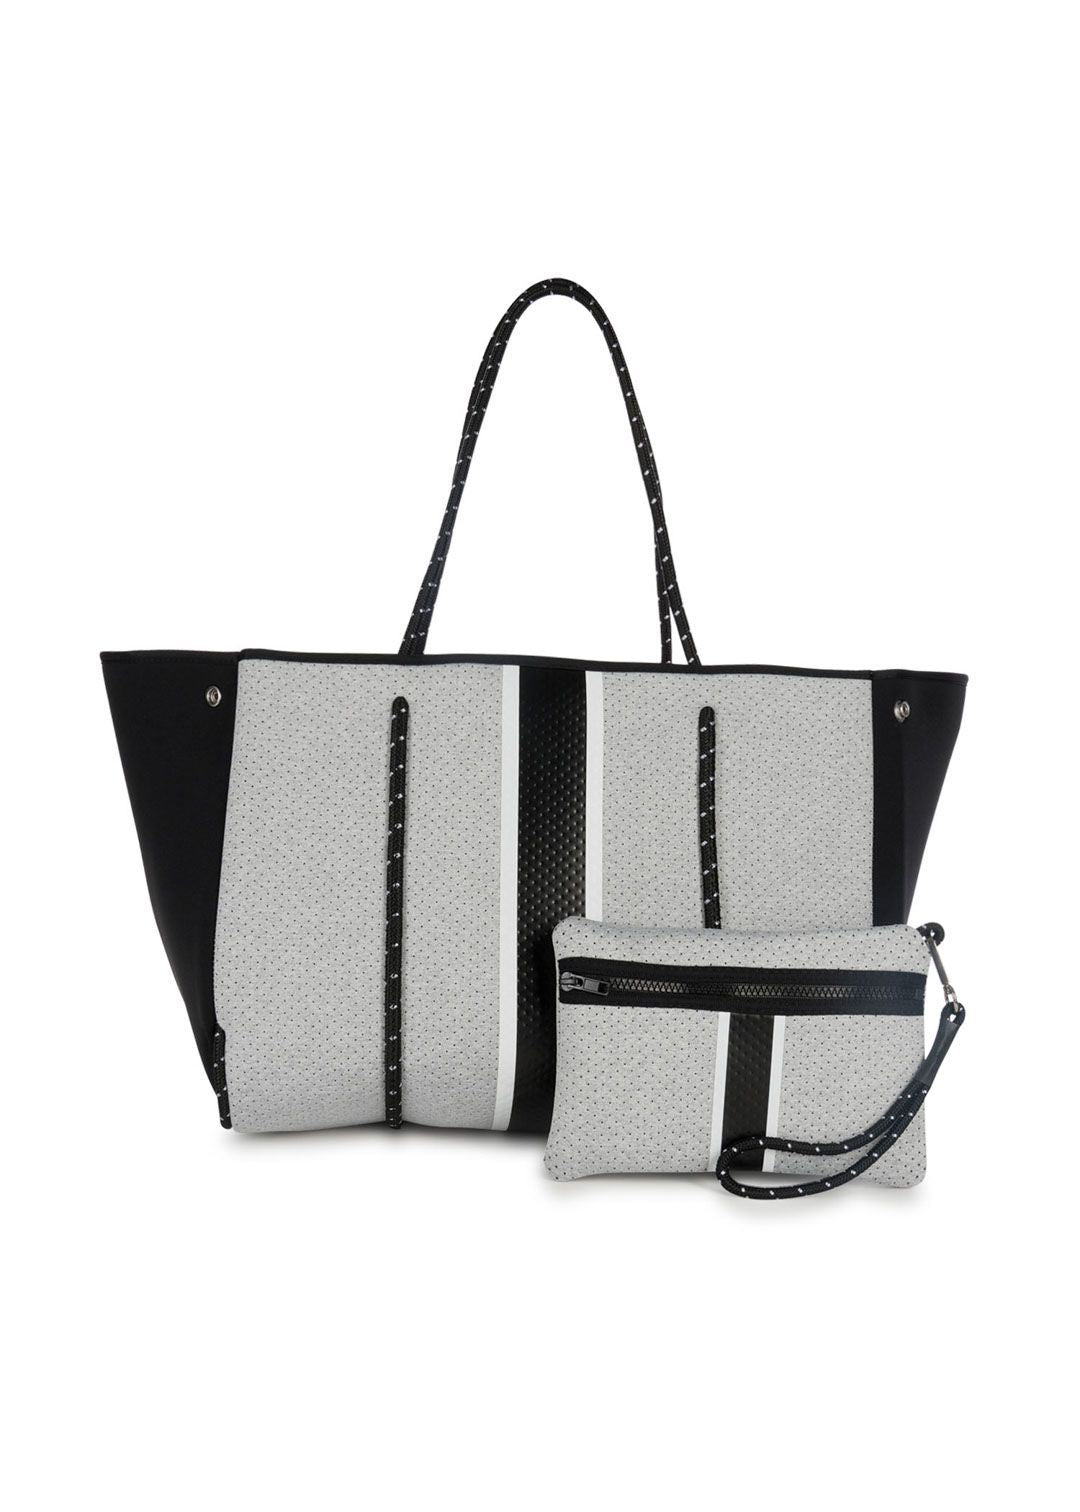 Neoprene Tote Bag Grey Camo w/ Stripes